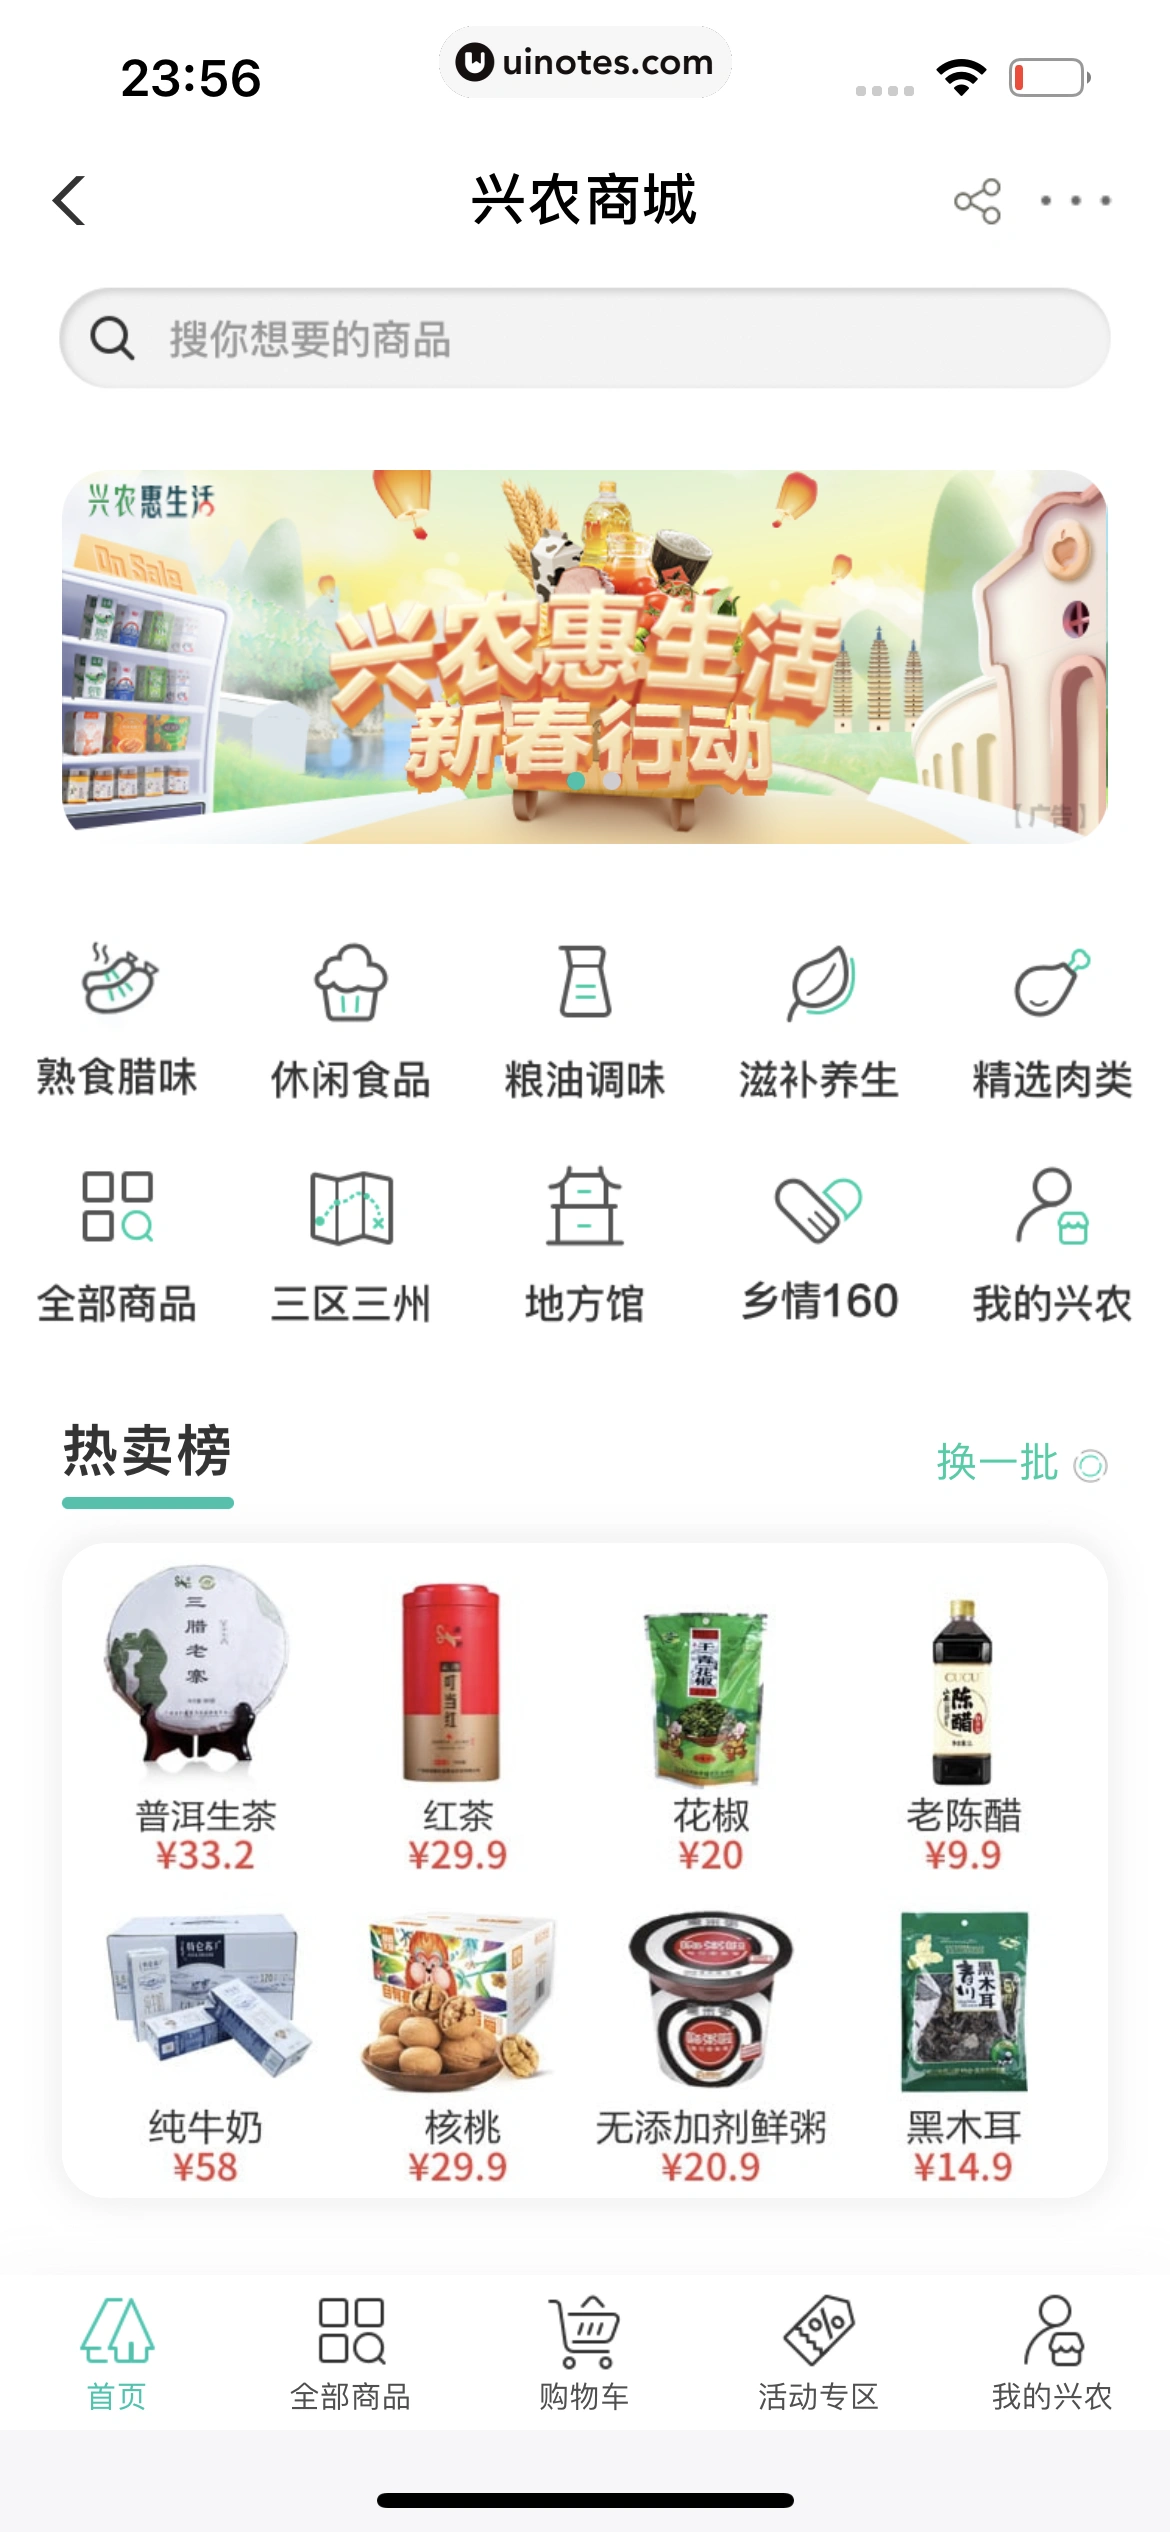 中国农业银行 App 截图 234 - UI Notes